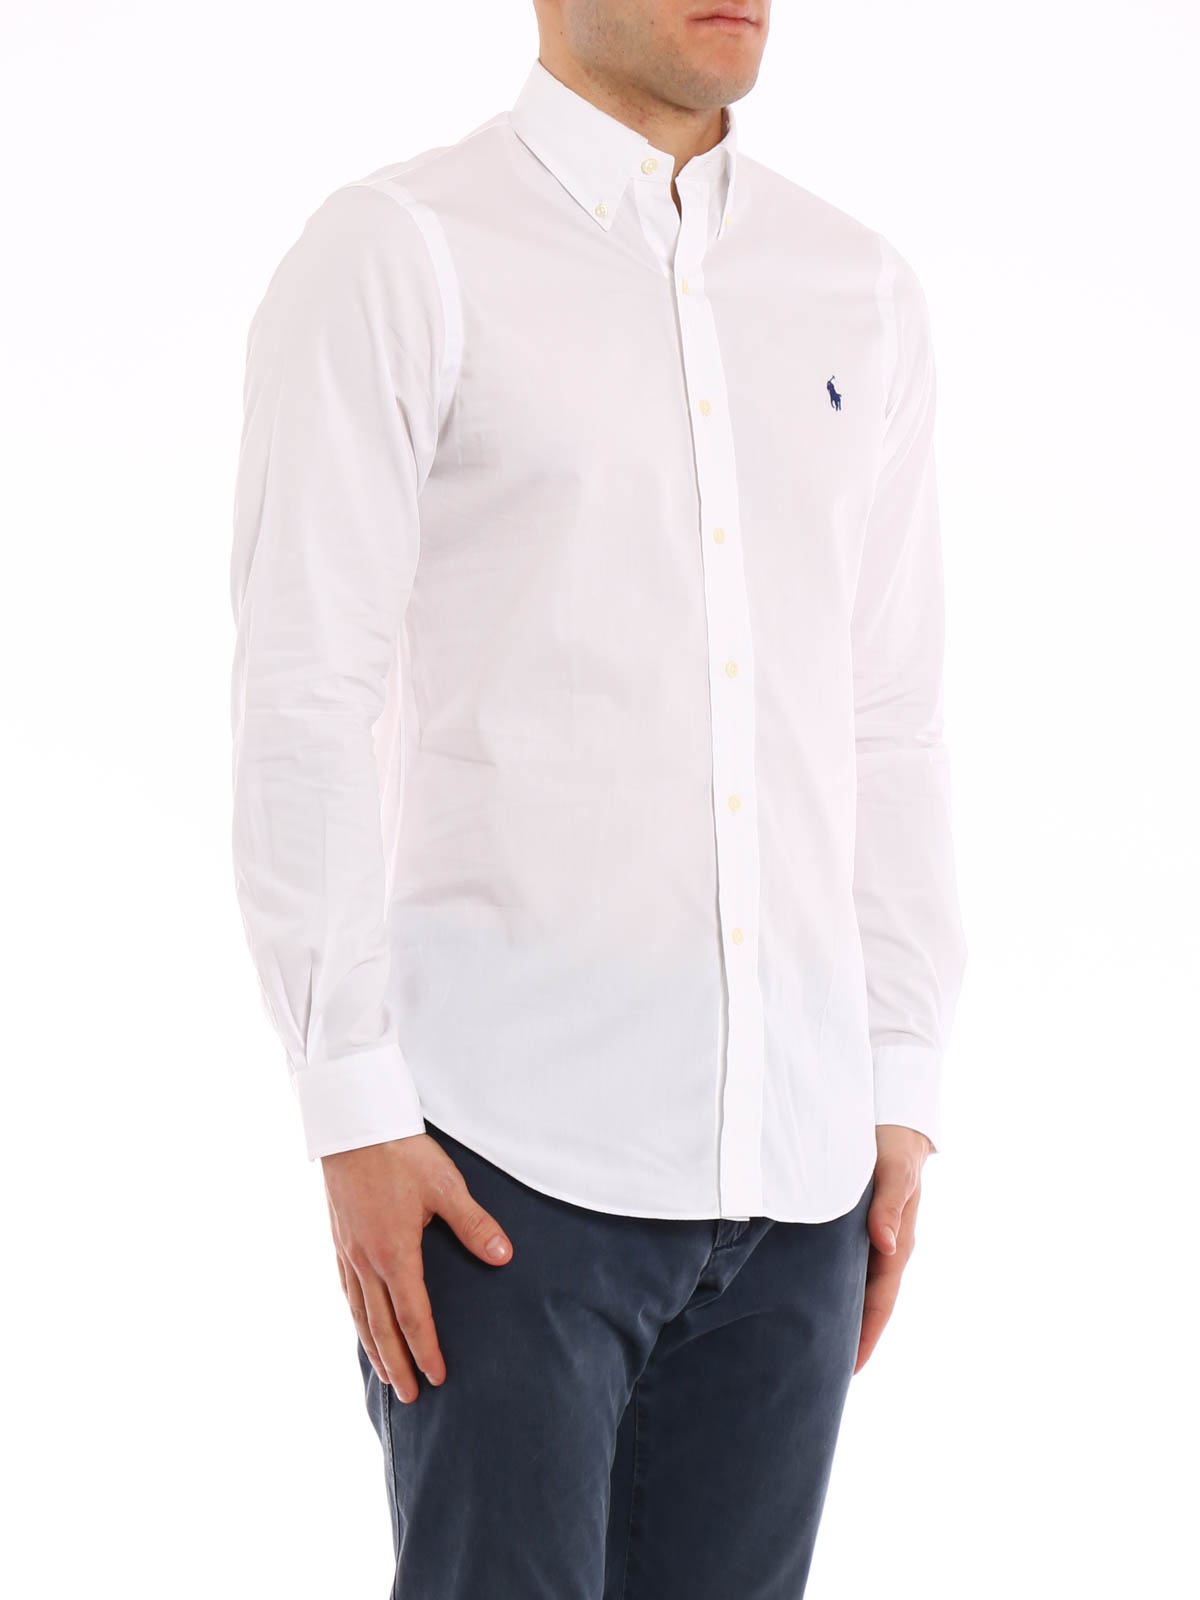 Camisas Polo Ralph Lauren - Camisa Blanca Para Hombre - A04WERDSC010191000